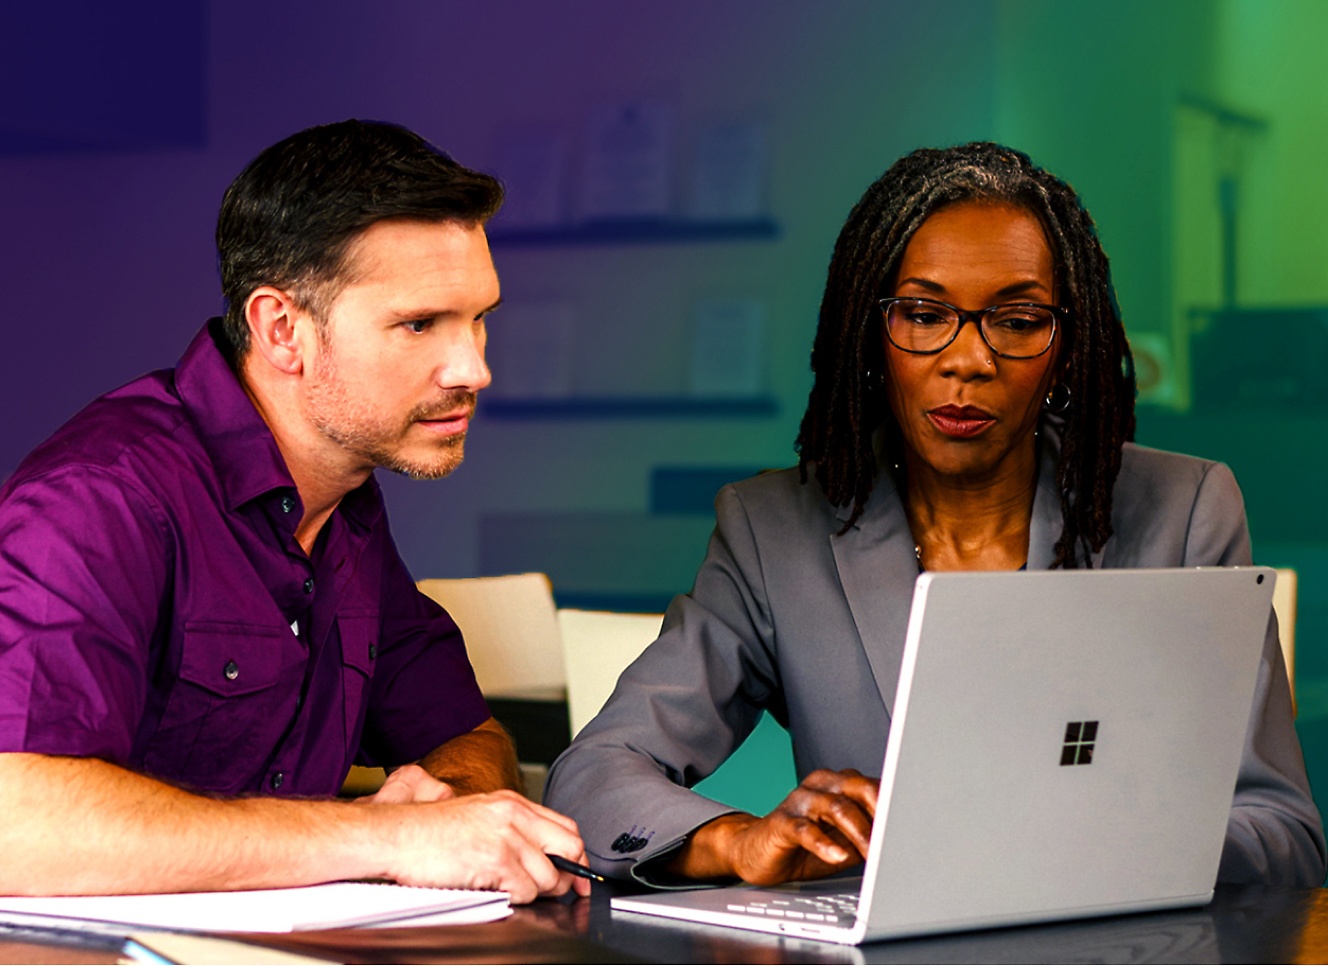 Egy férfi és egy nő egy laptopot néz.